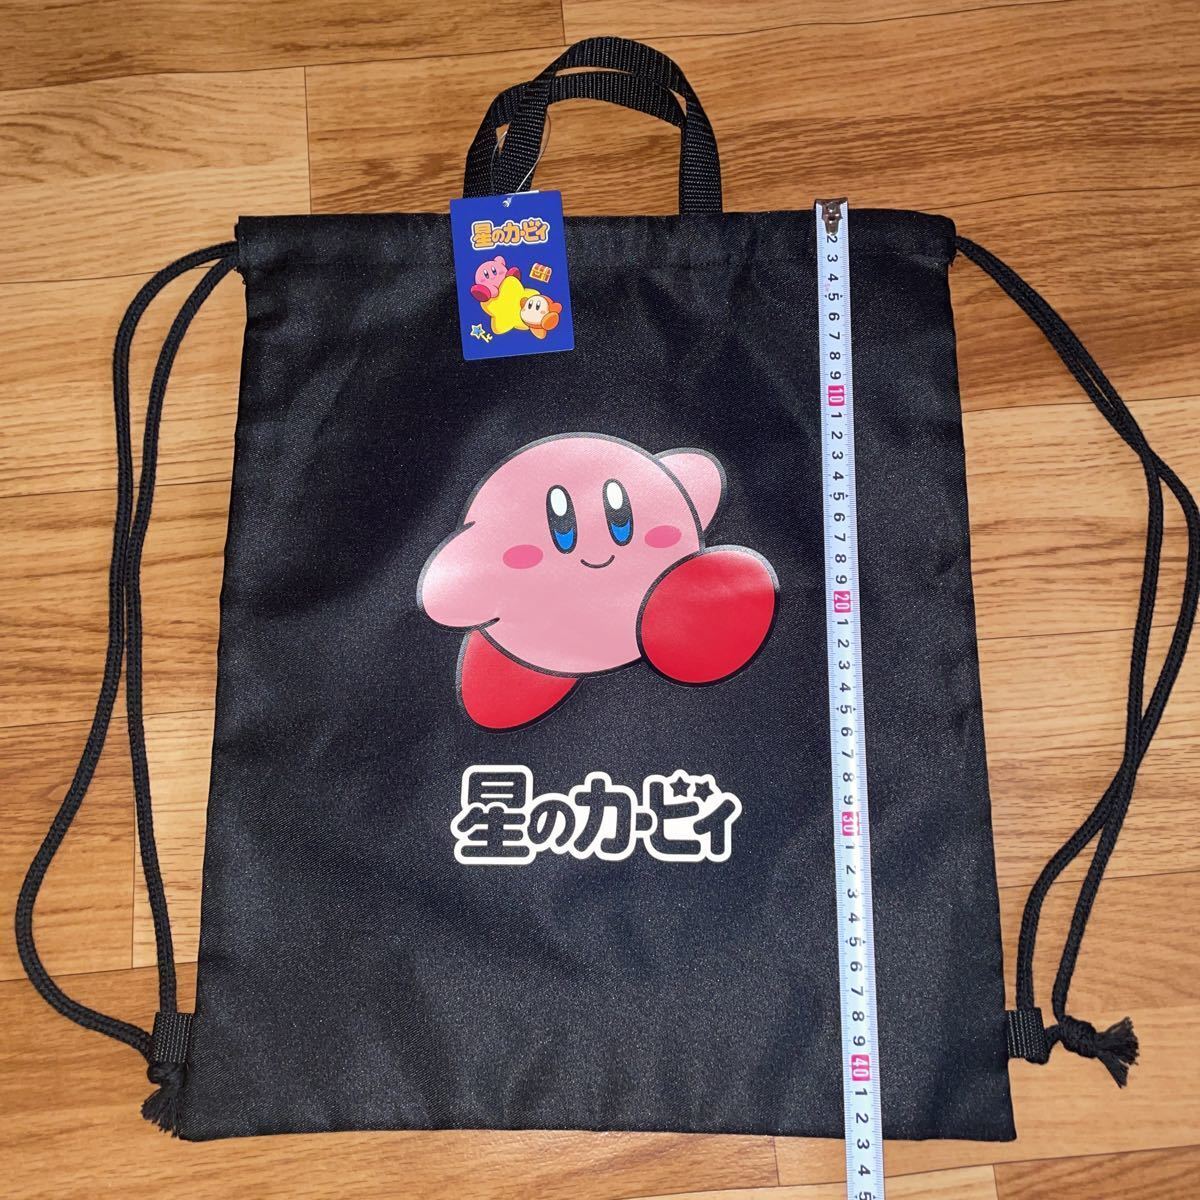 Kirby Knapsack Nintendo Black Black,  outings, backpack